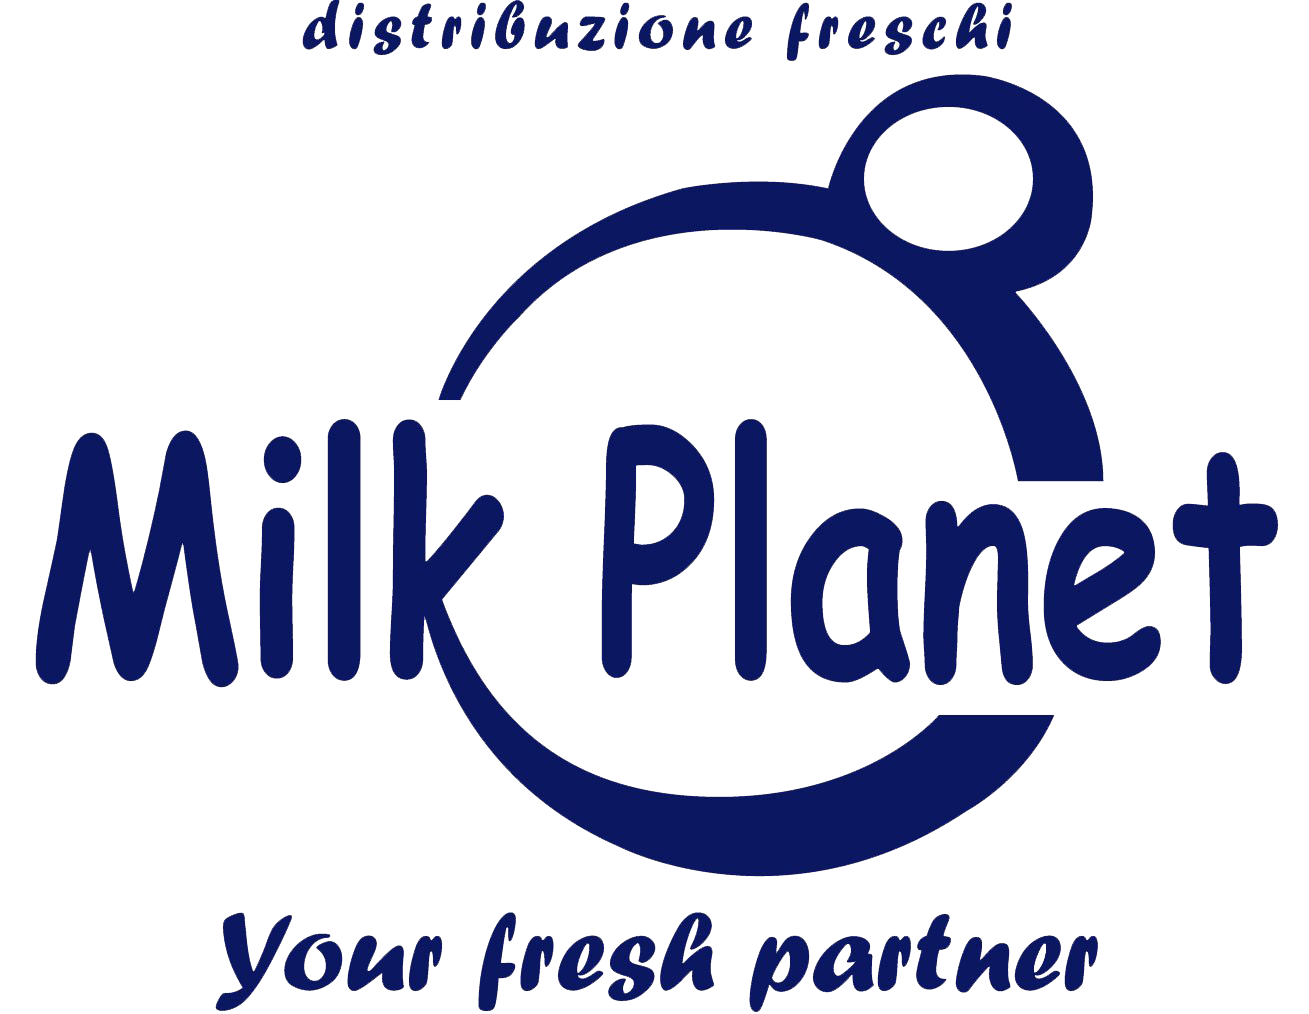 Ingrosso e distribuzione di latticini freschi, formaggi e salumi nelle province di Teramo, Ascoli Piceno e Fermo